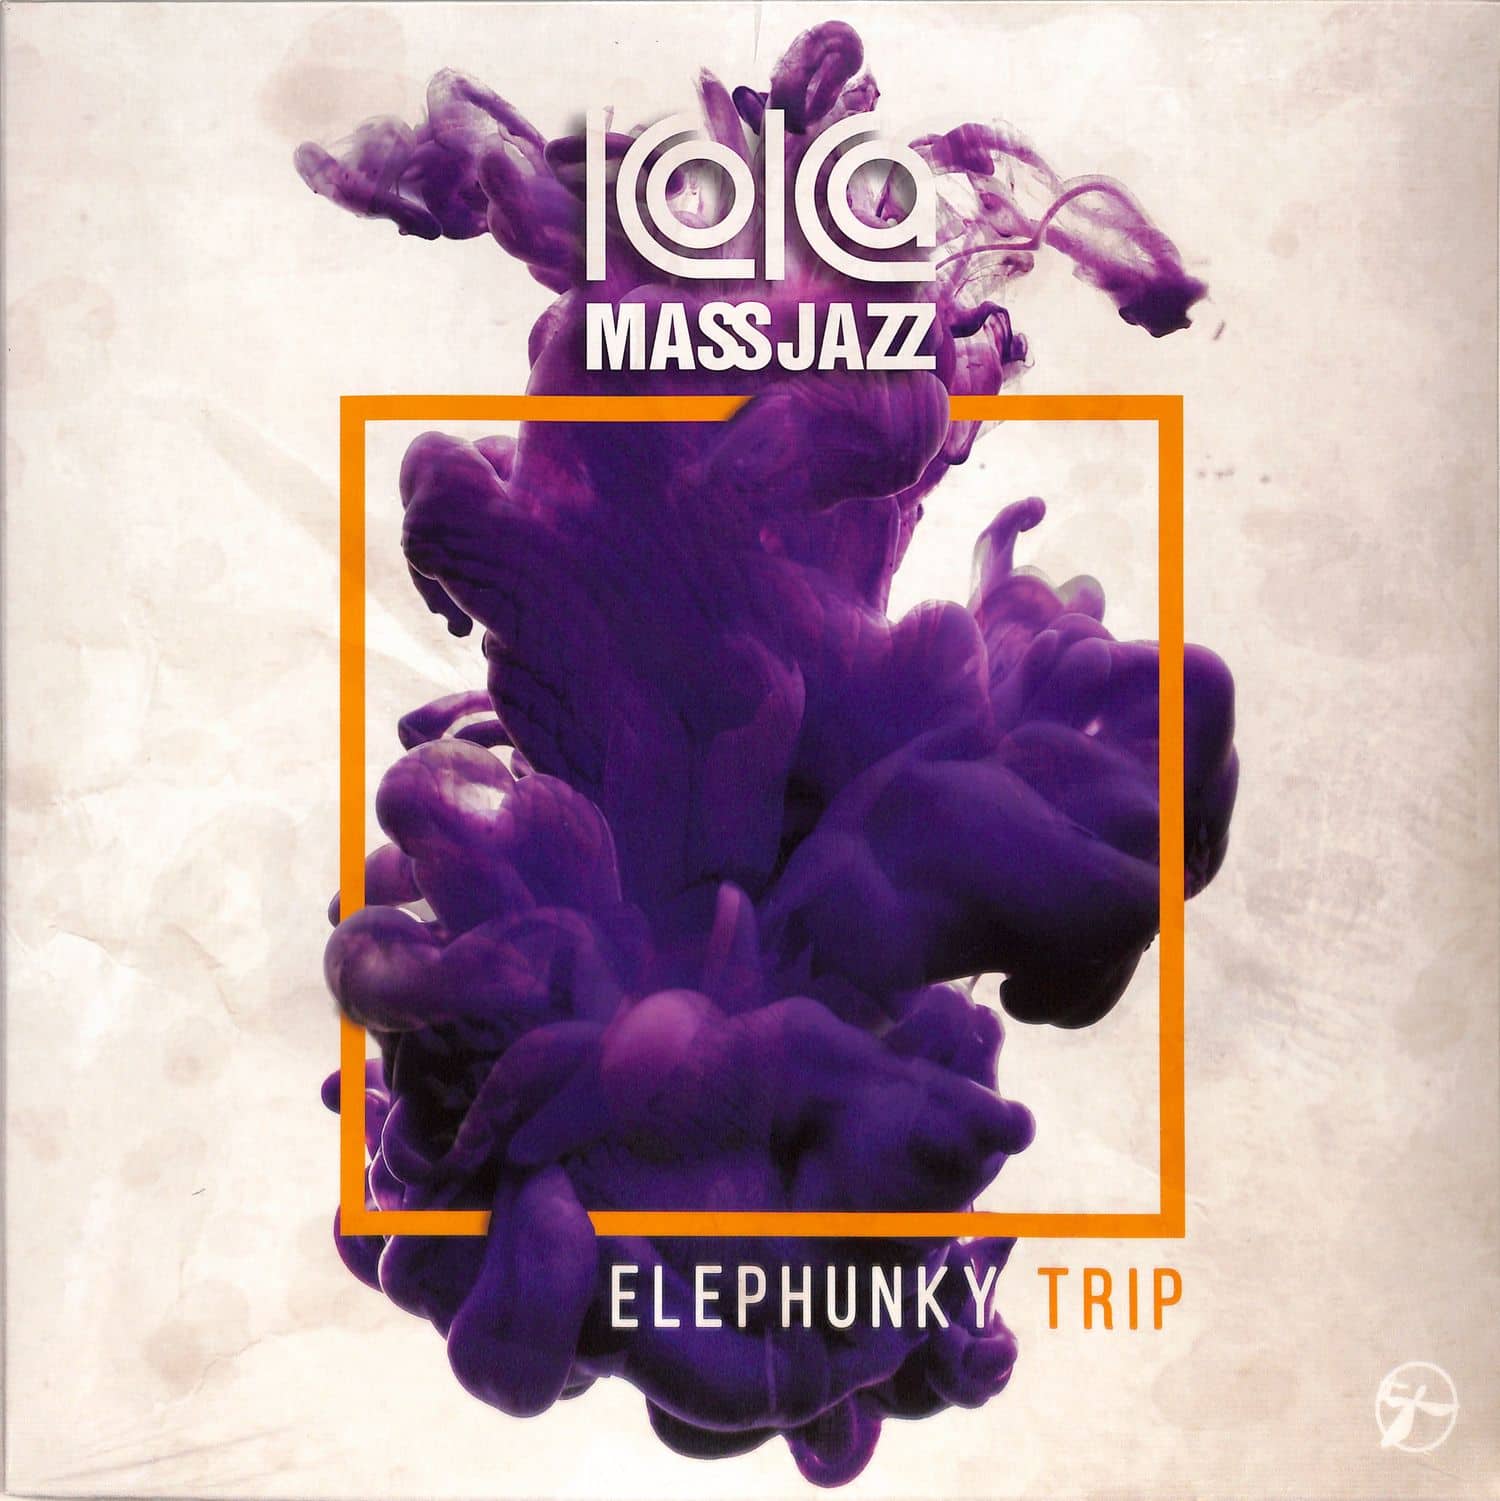 Koka Mass Jazz - ELEPHUNKY TRIP 